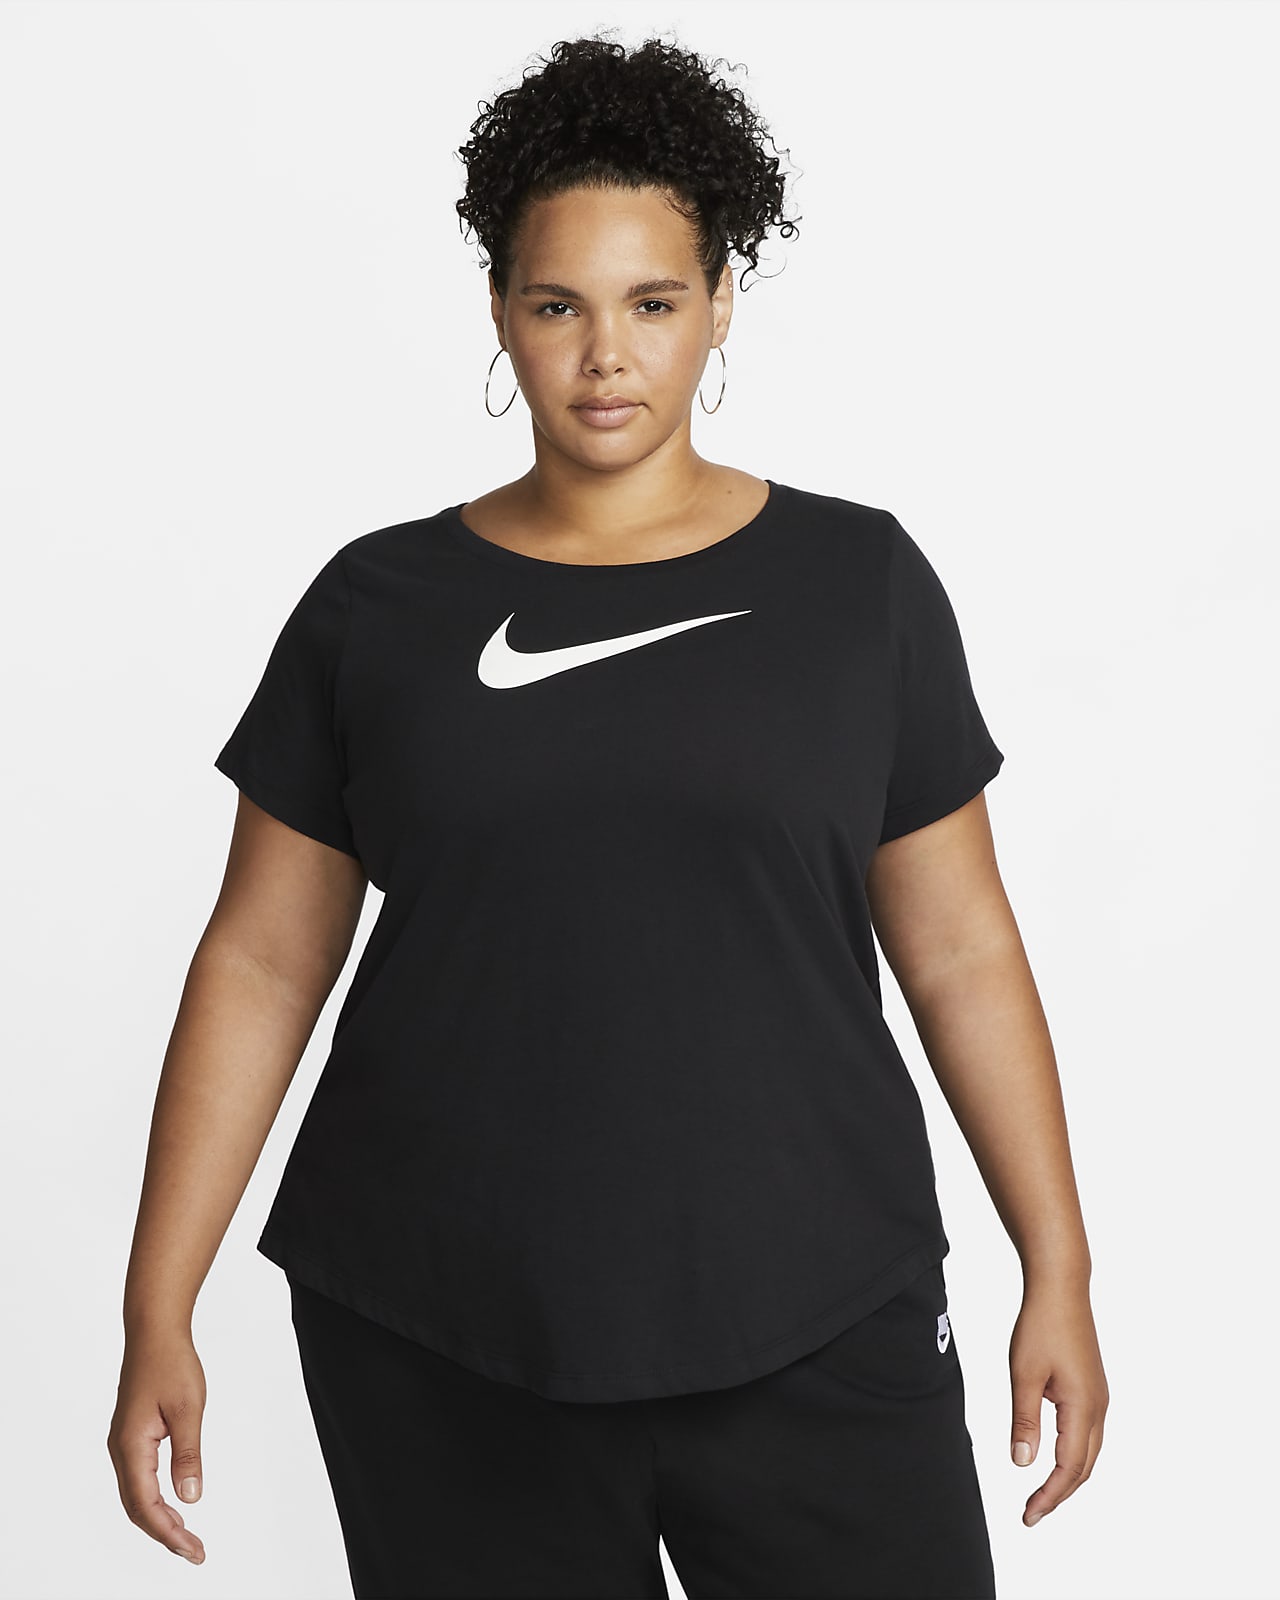 Nike Swoosh Women's T-Shirt Size).